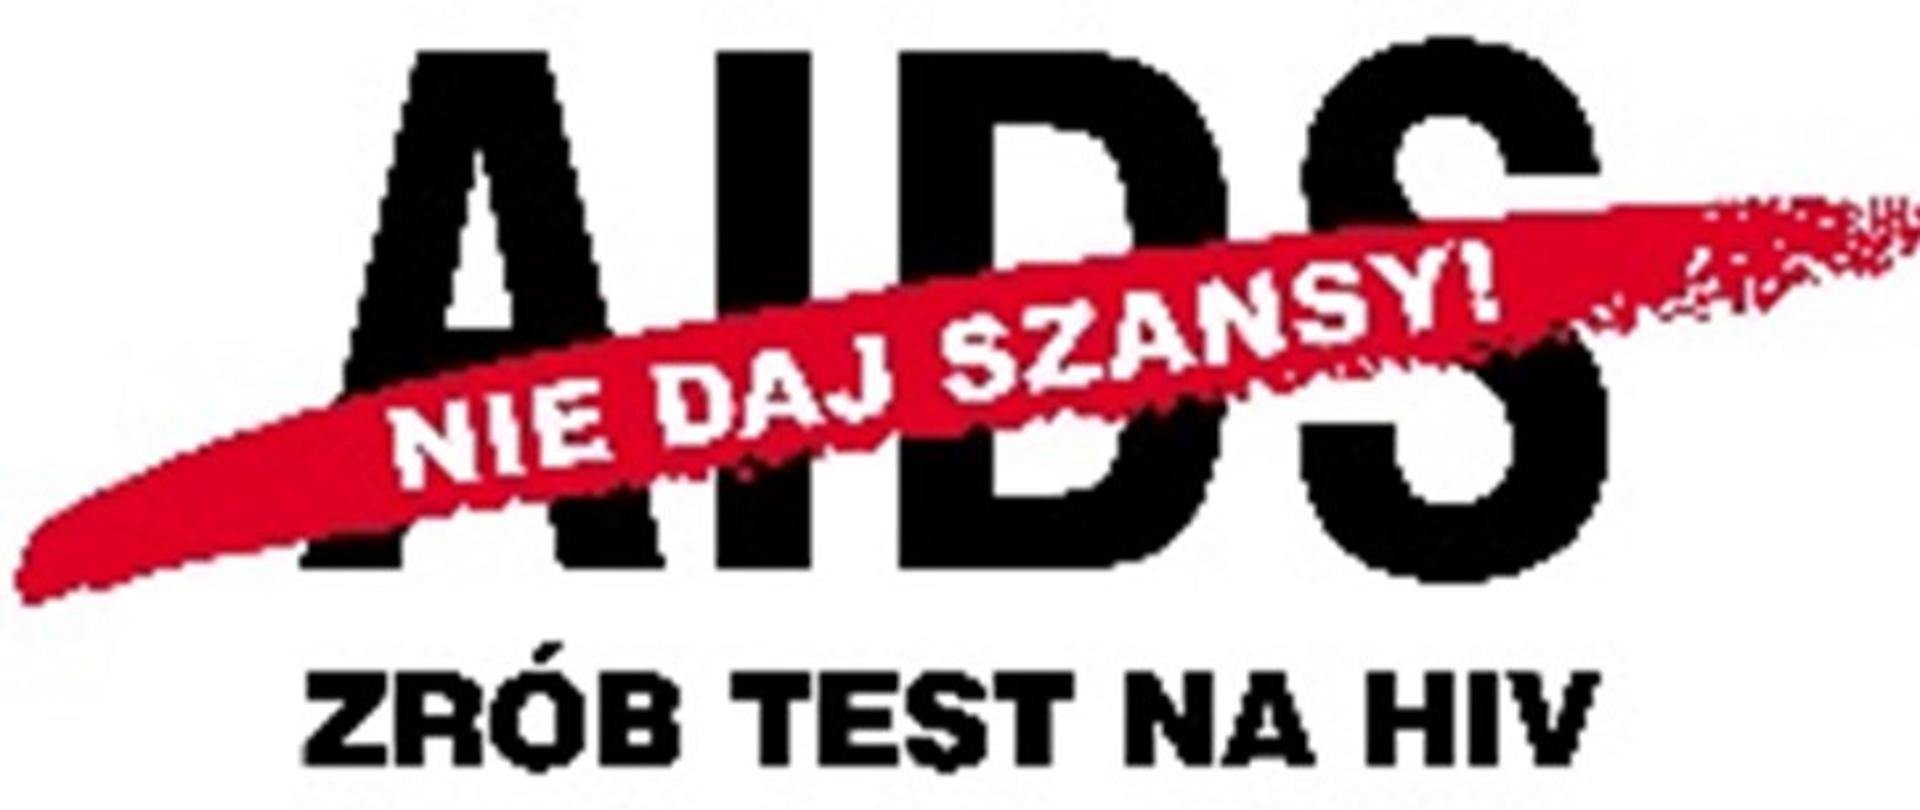 NIE DAJ SZANSY AIDS - ZRÓB TEST NA HIV